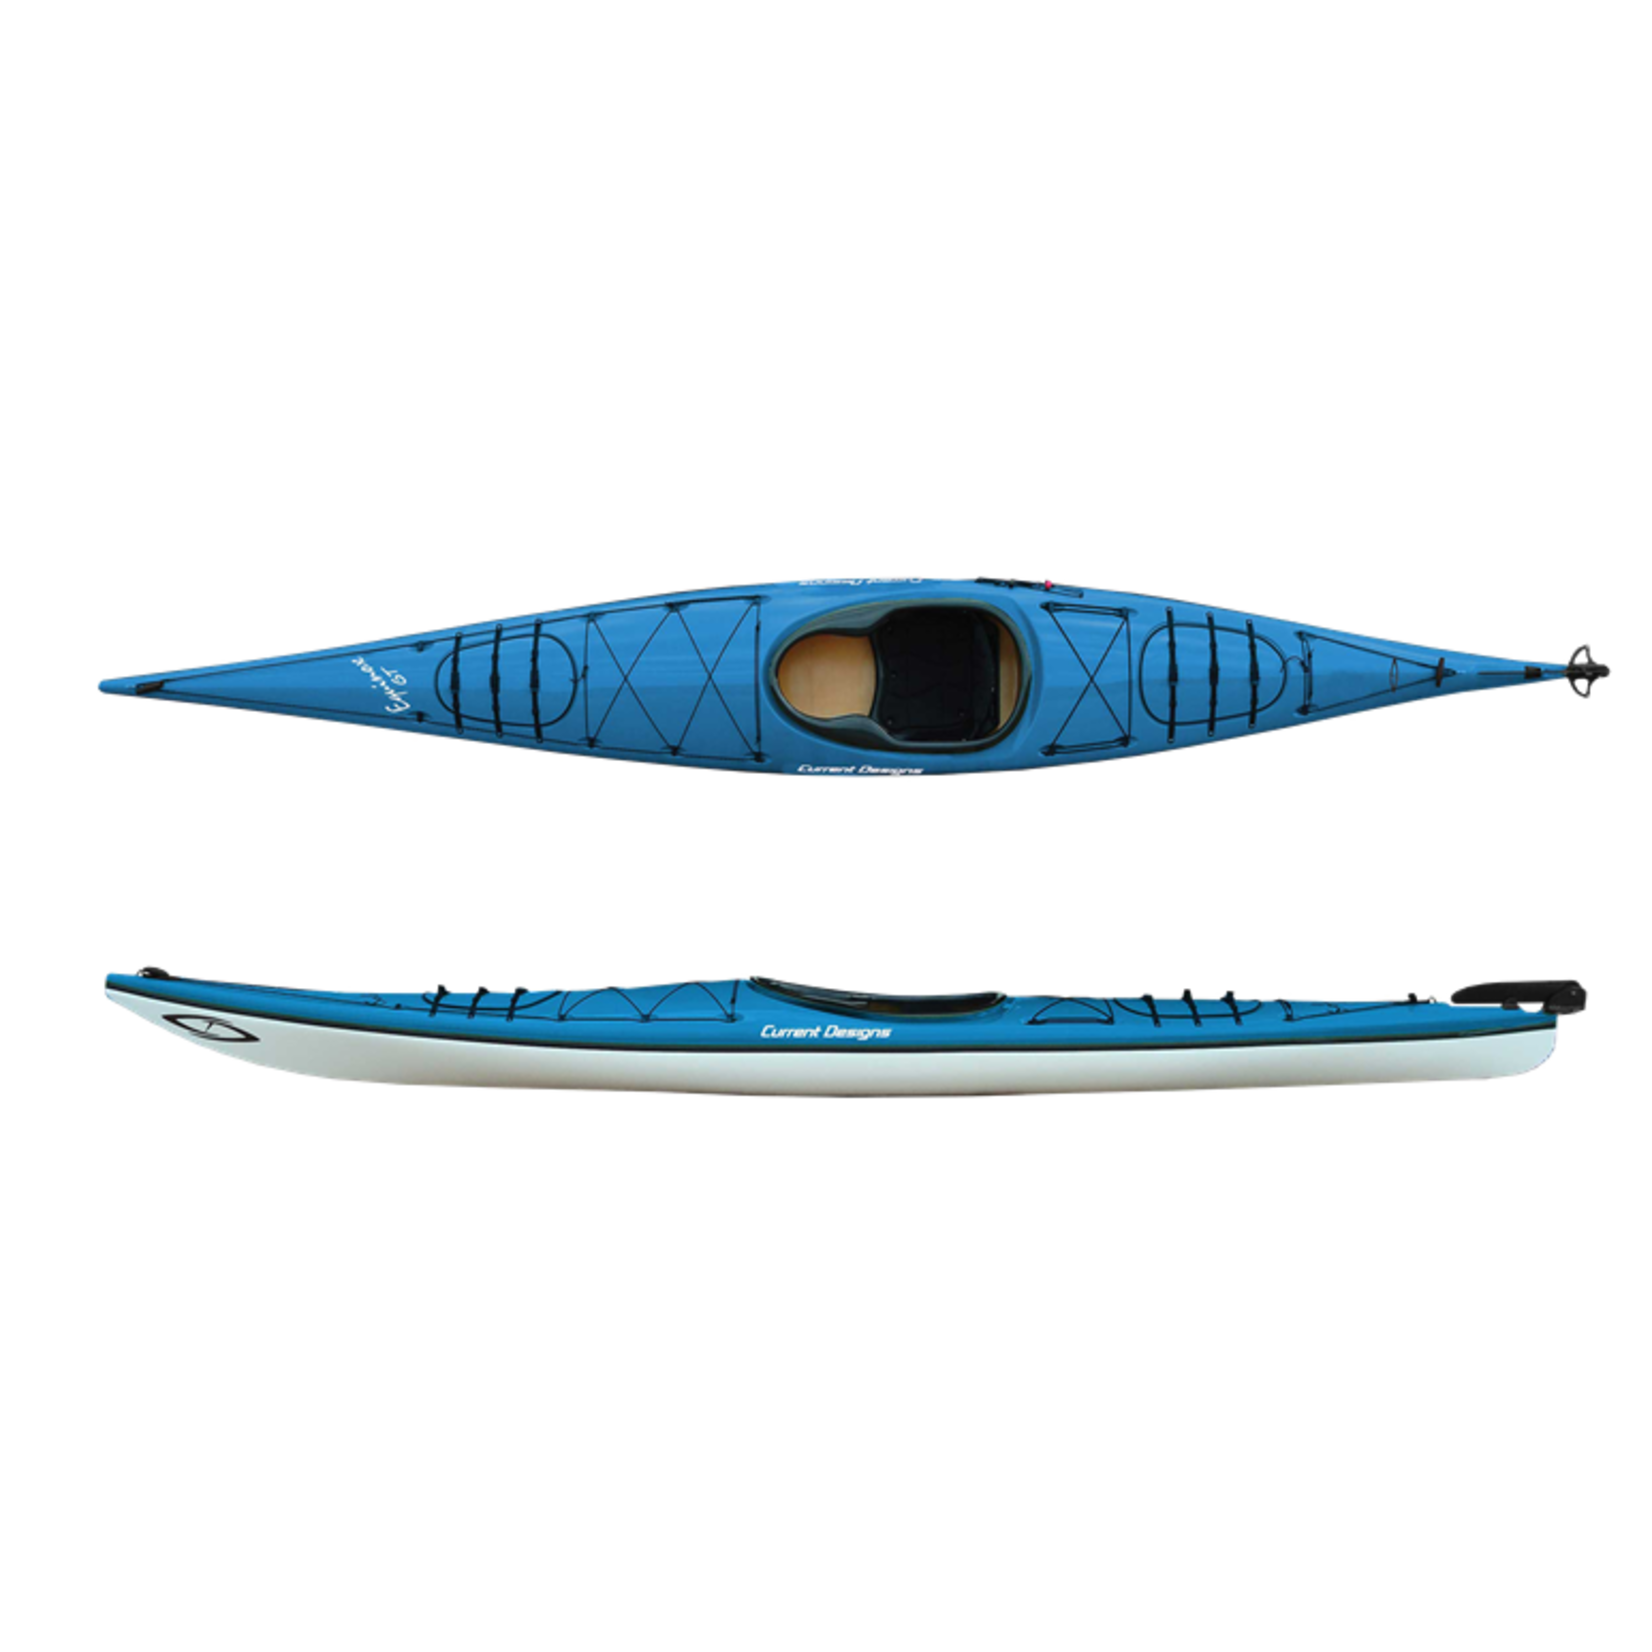 Current Designs Kayak de mer Equinox GT